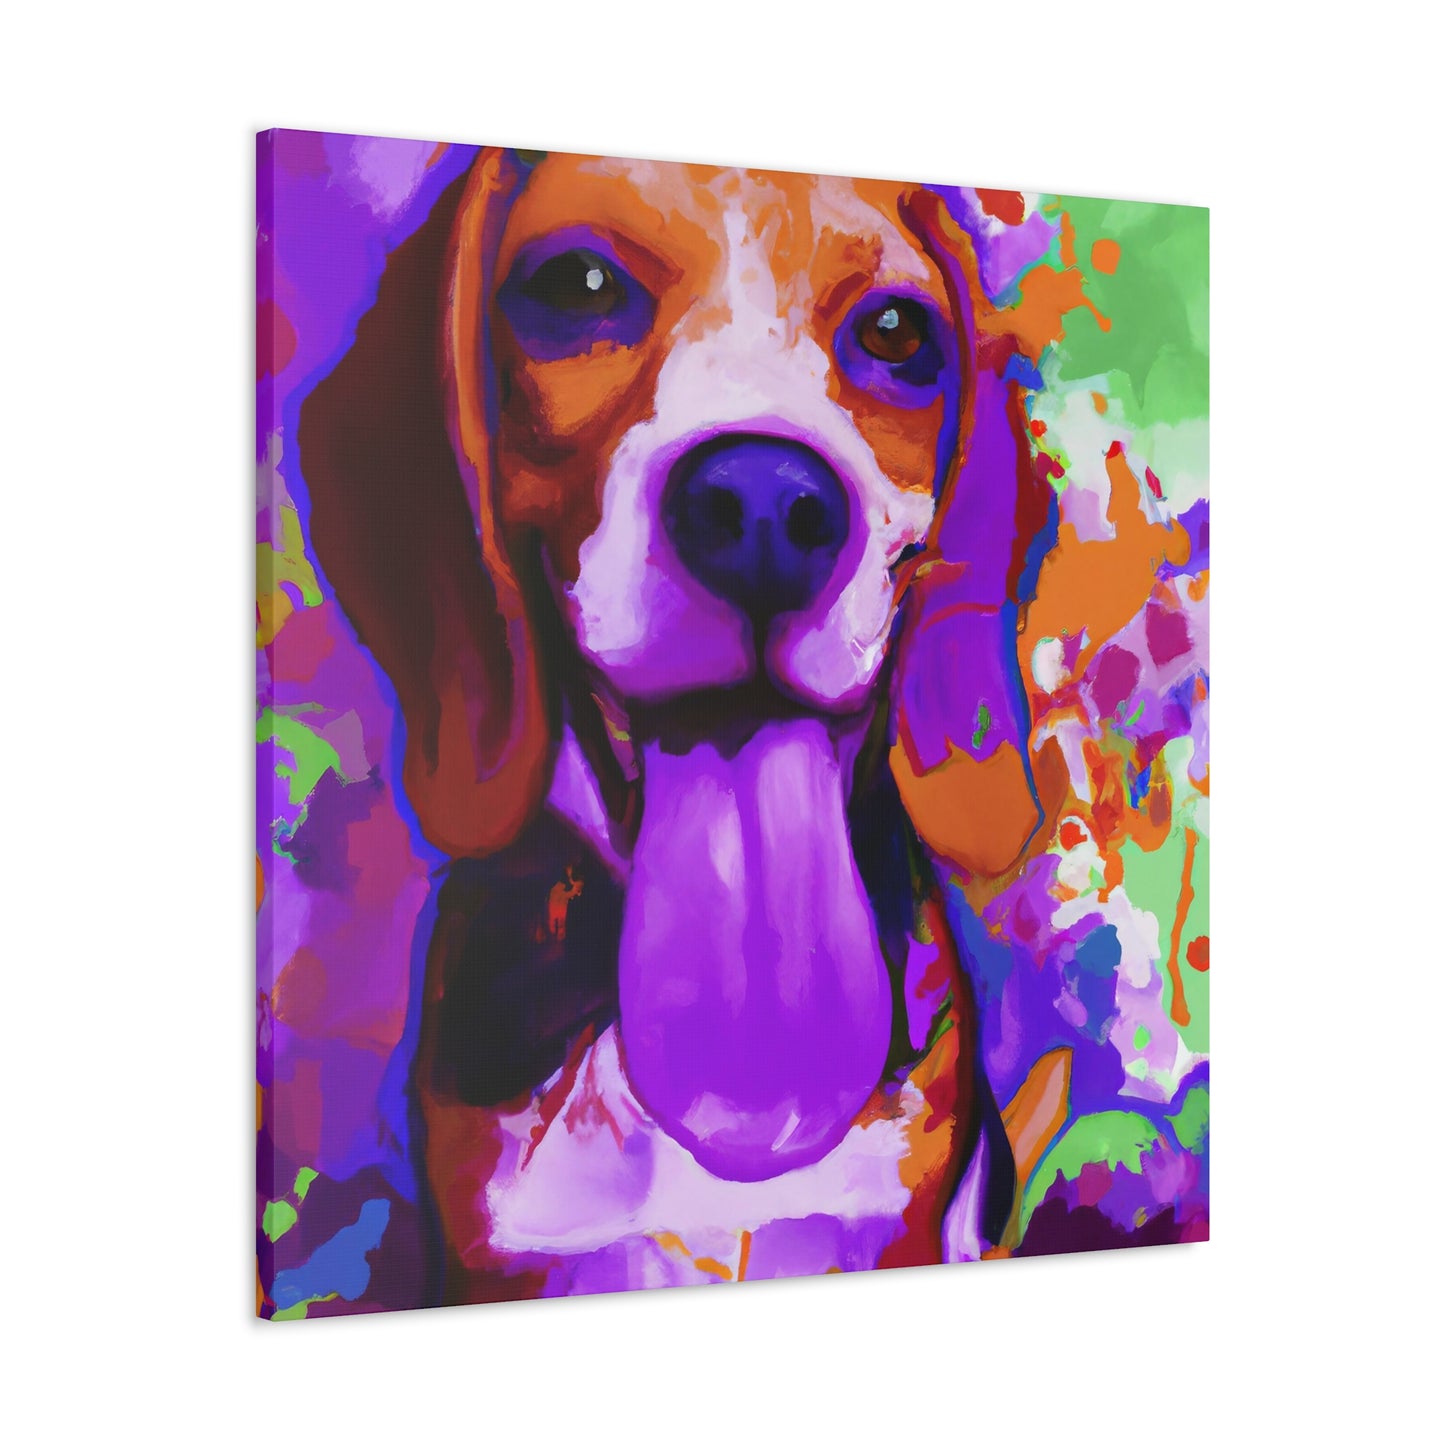 Duchess Adaliz de Monteleone - Beagle Puppy - Canvas